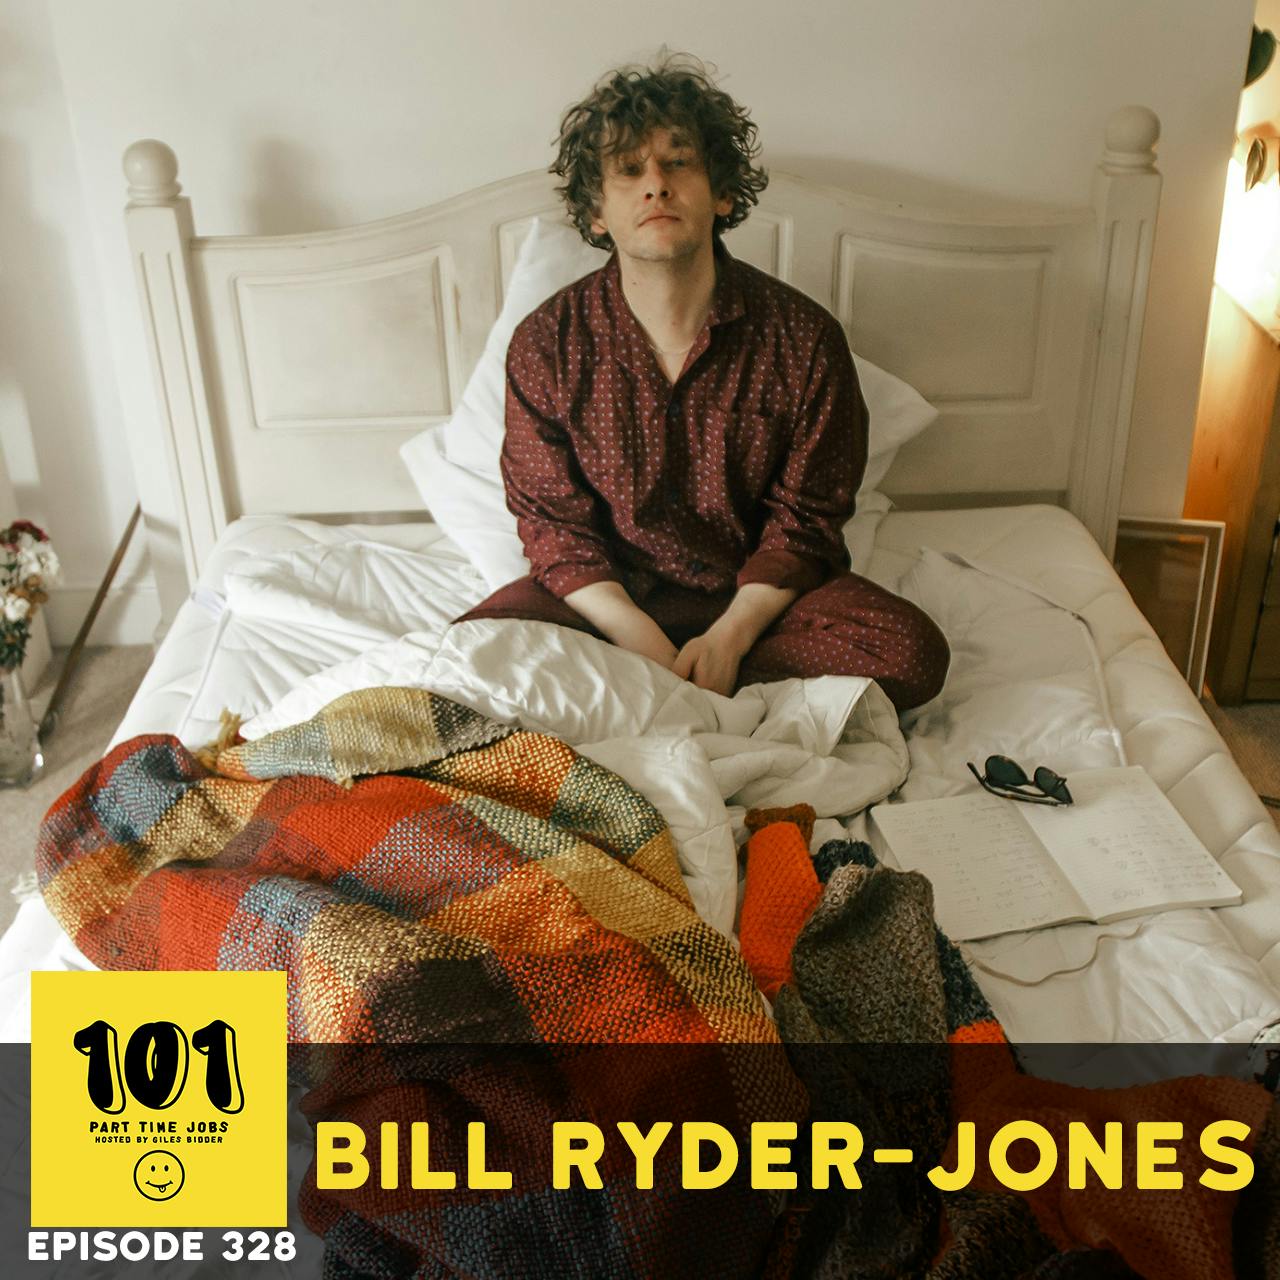 Bill Ryder-Jones - "Don't need much"